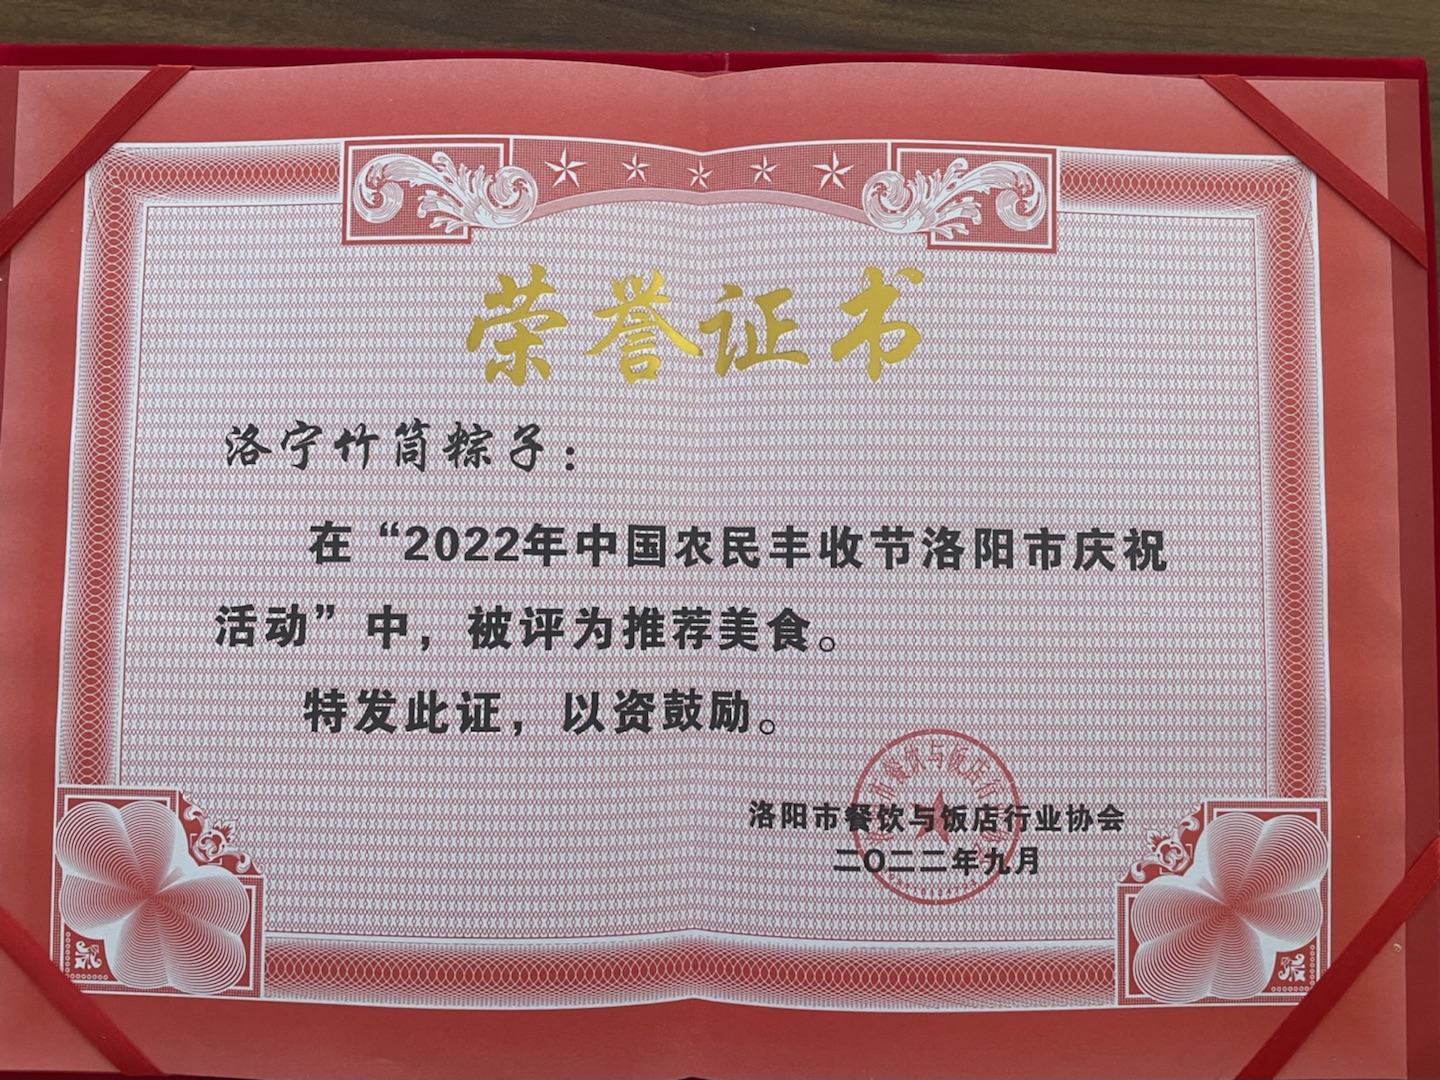 我公司竹筒粽子獲得2022年洛陽市豐收節推薦美食